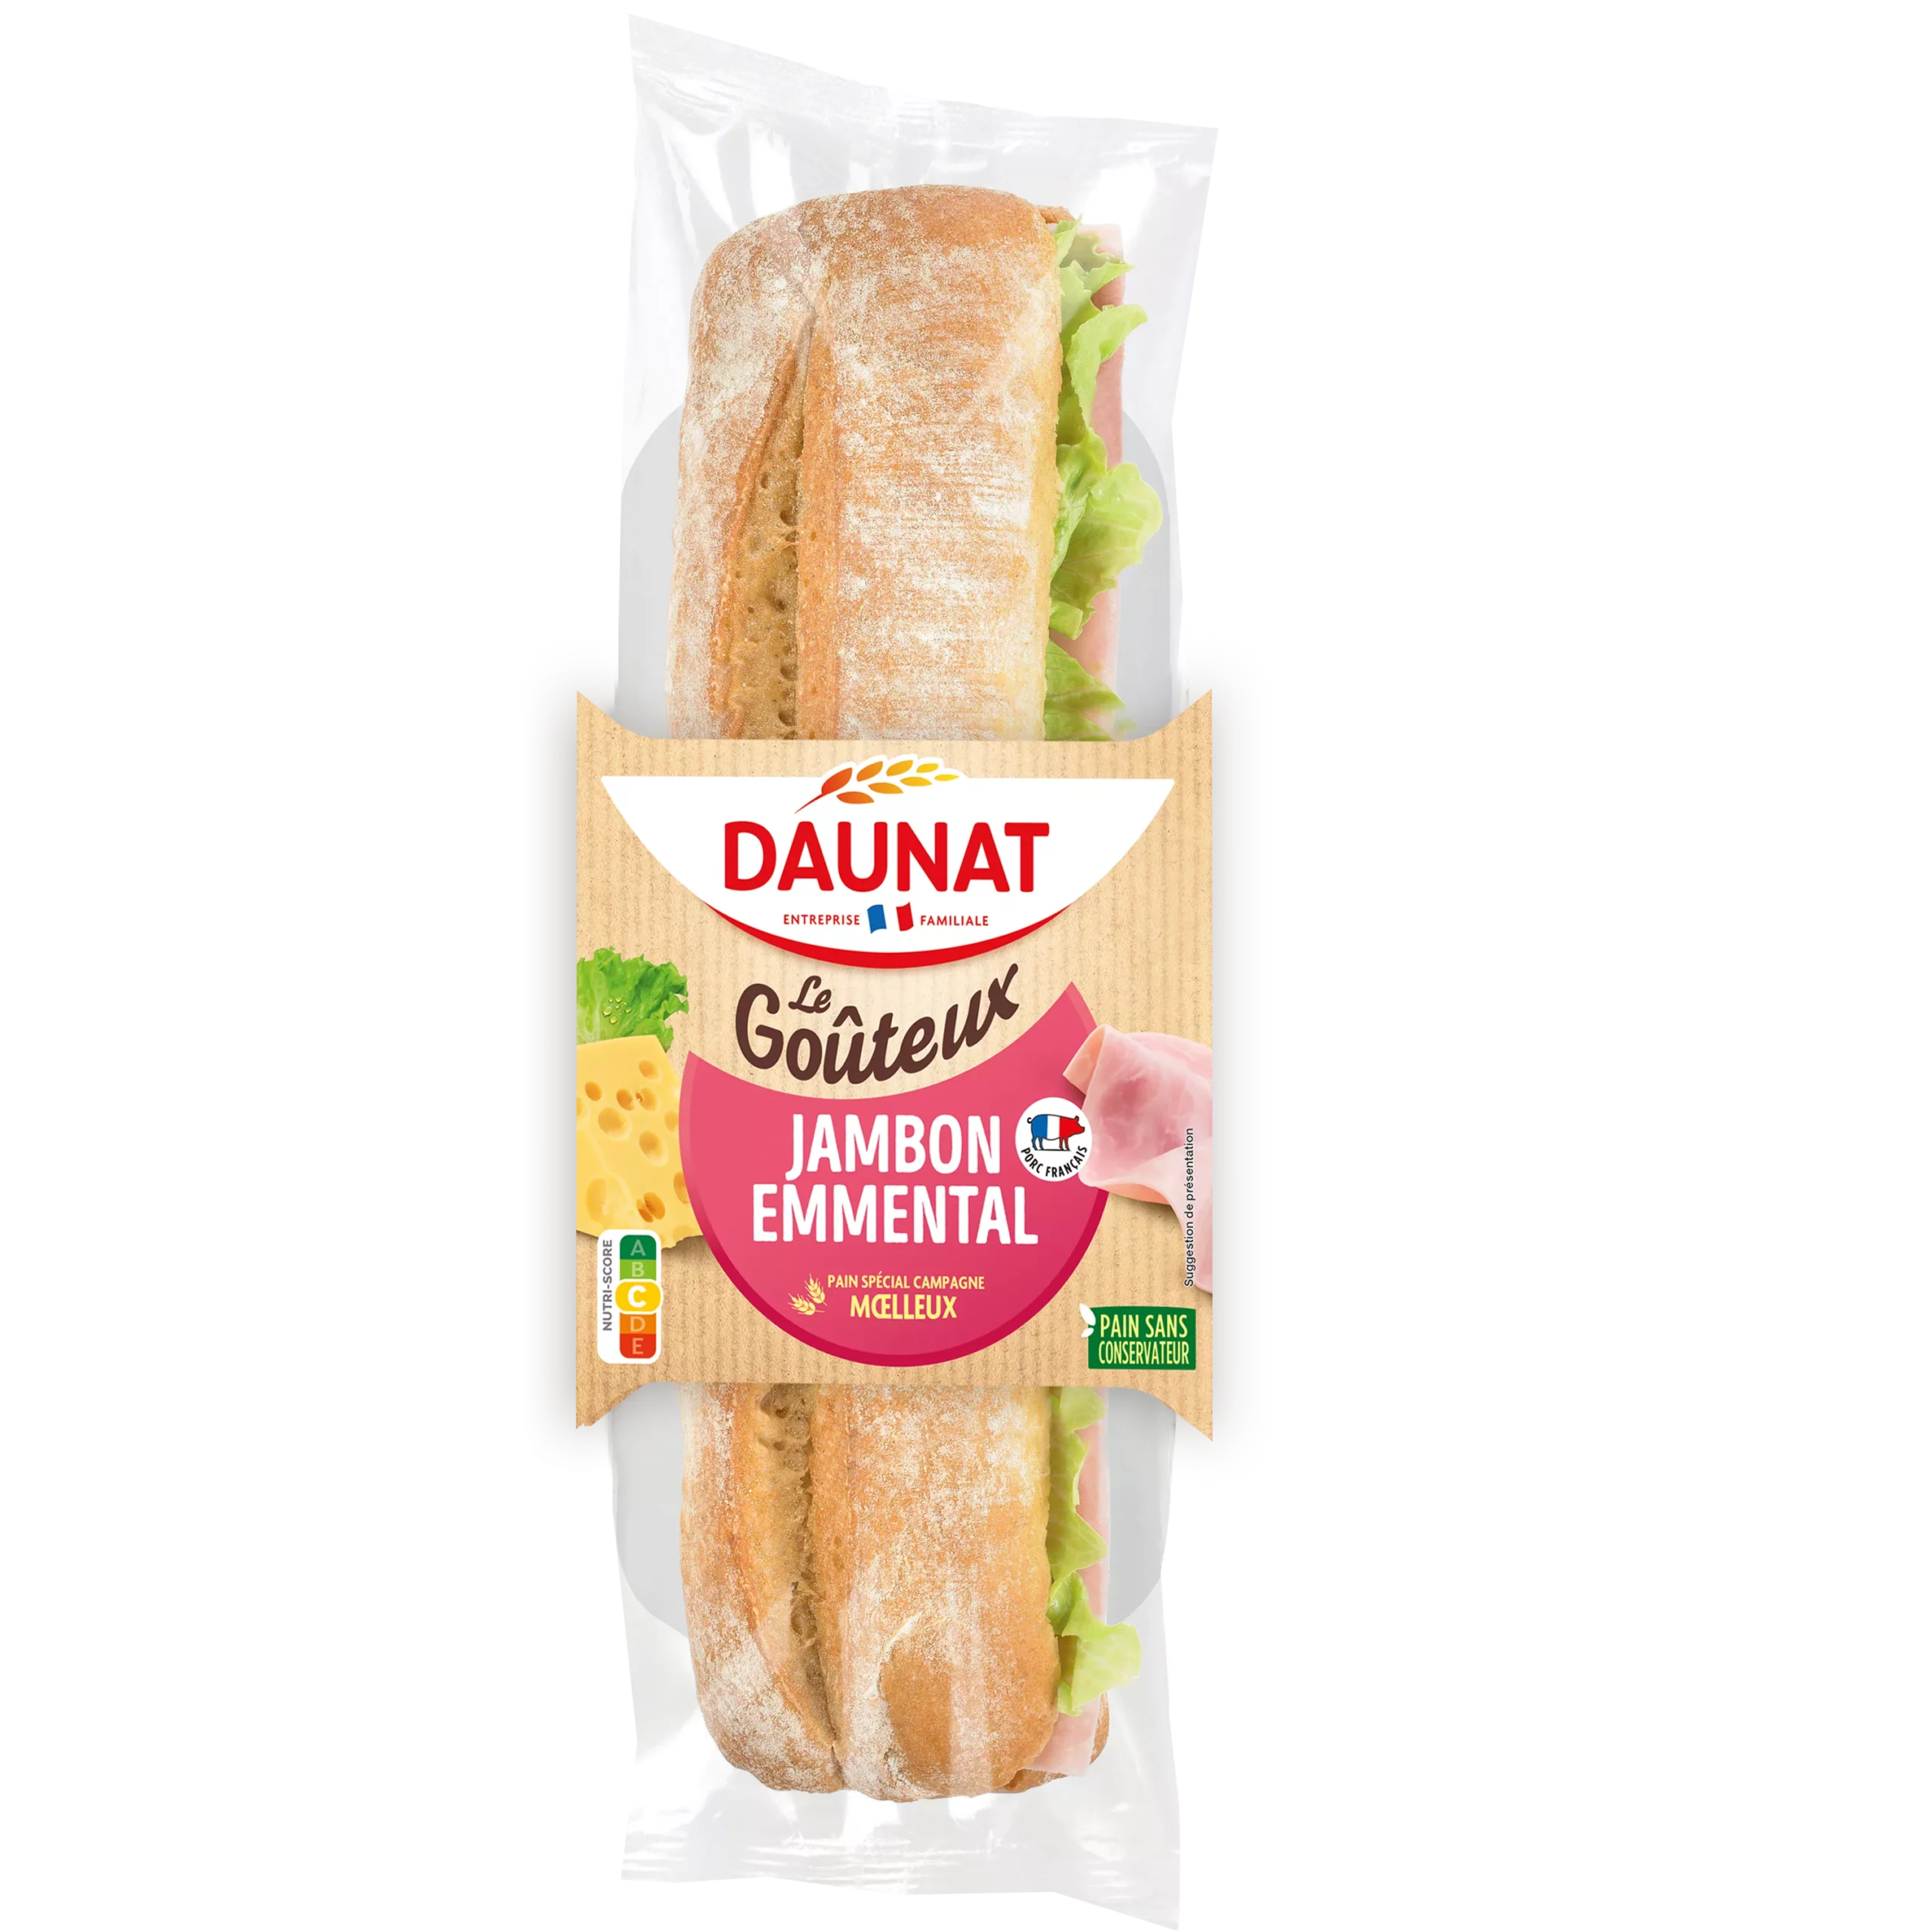 Sandwich baguette Le Gouteux Jambon Emmental 220g